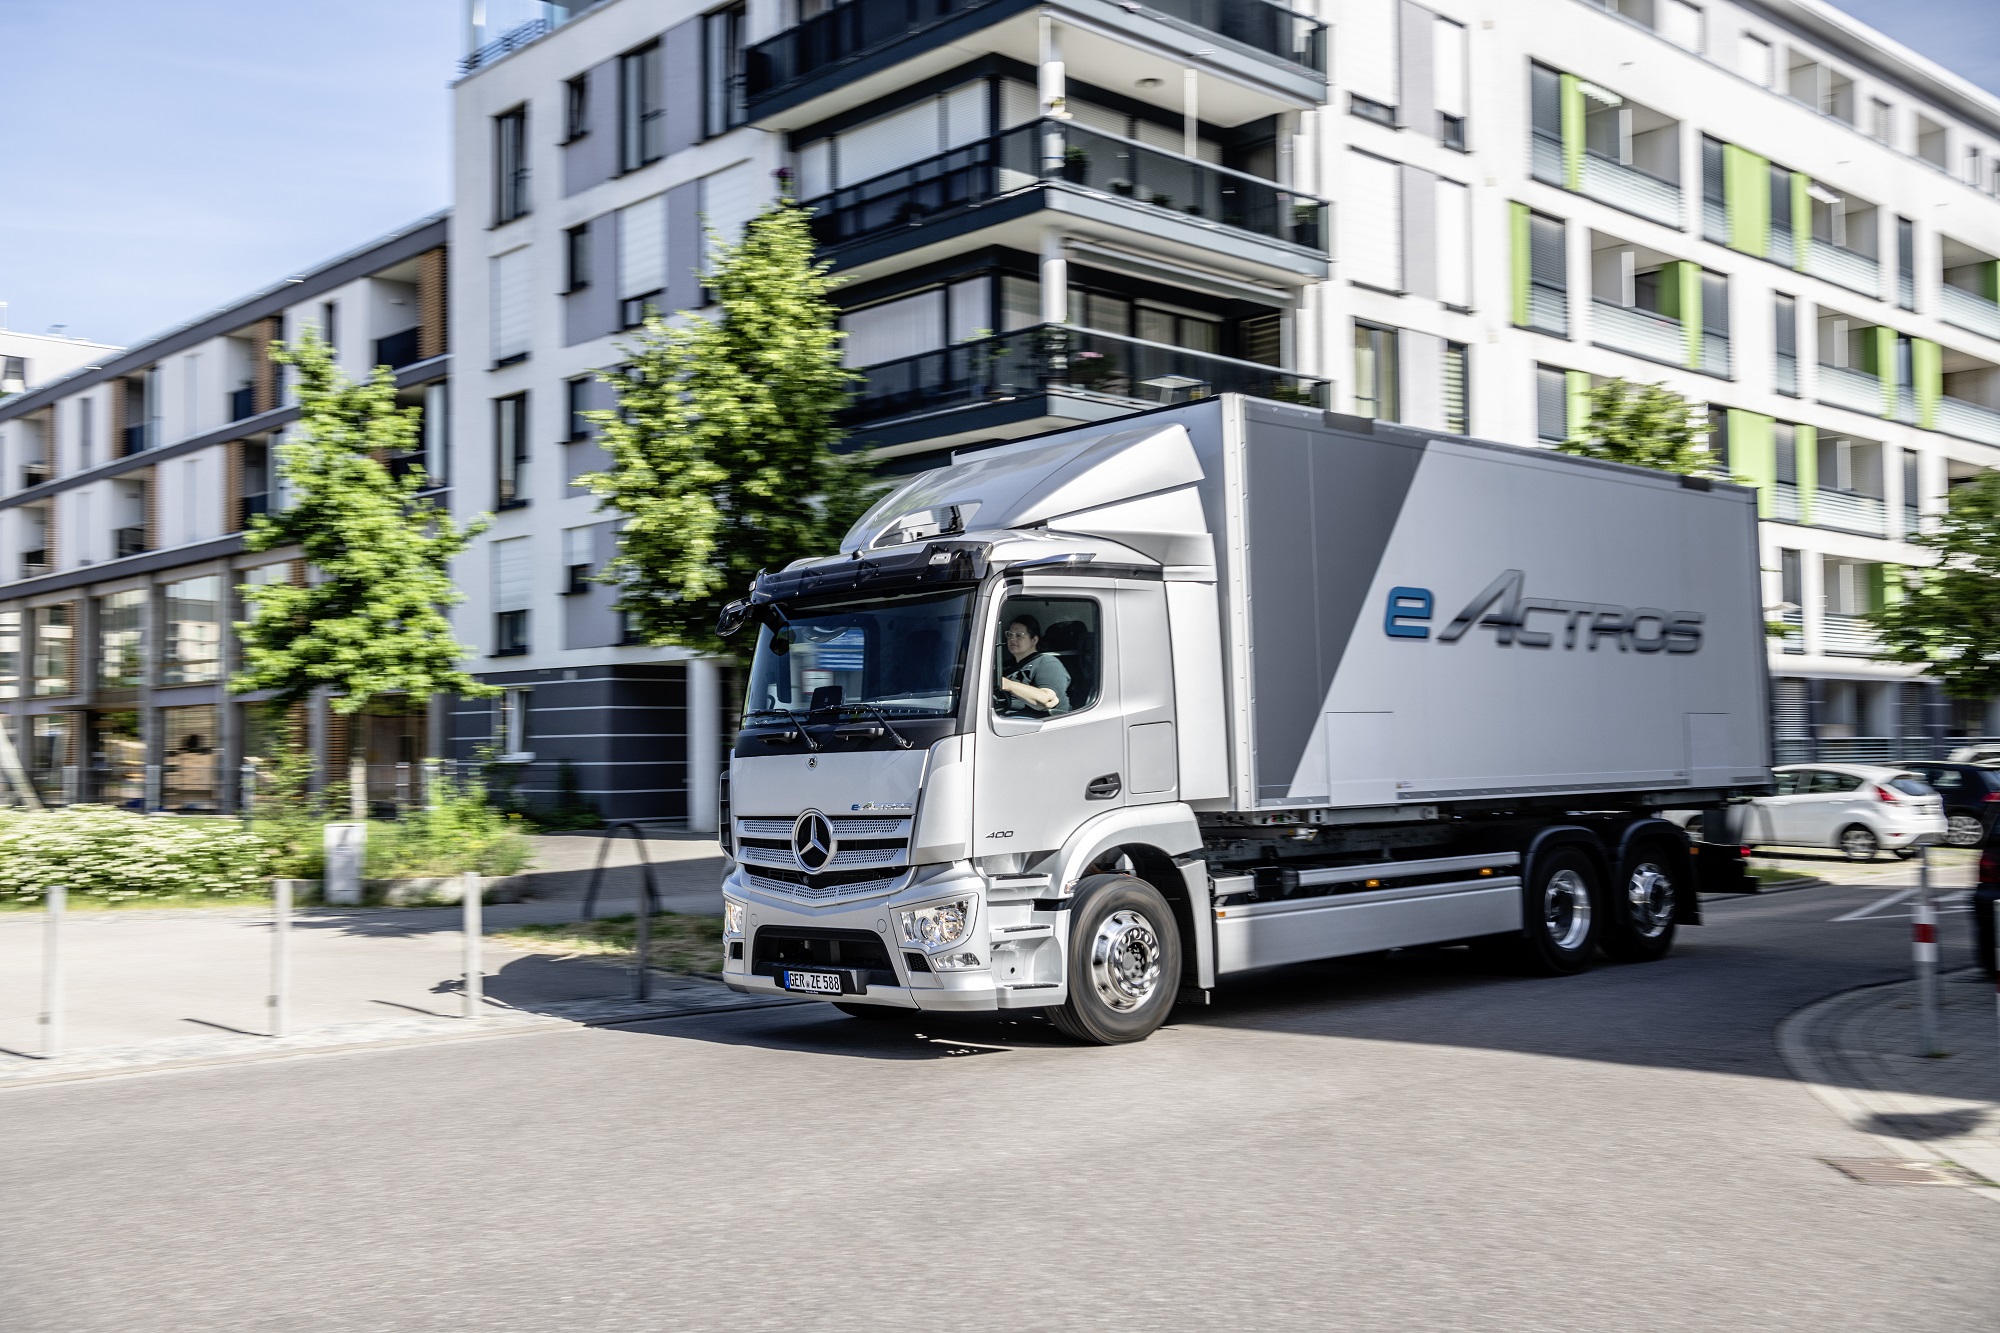 Mercedez-Benz lanceert eActros voor distributievervoer